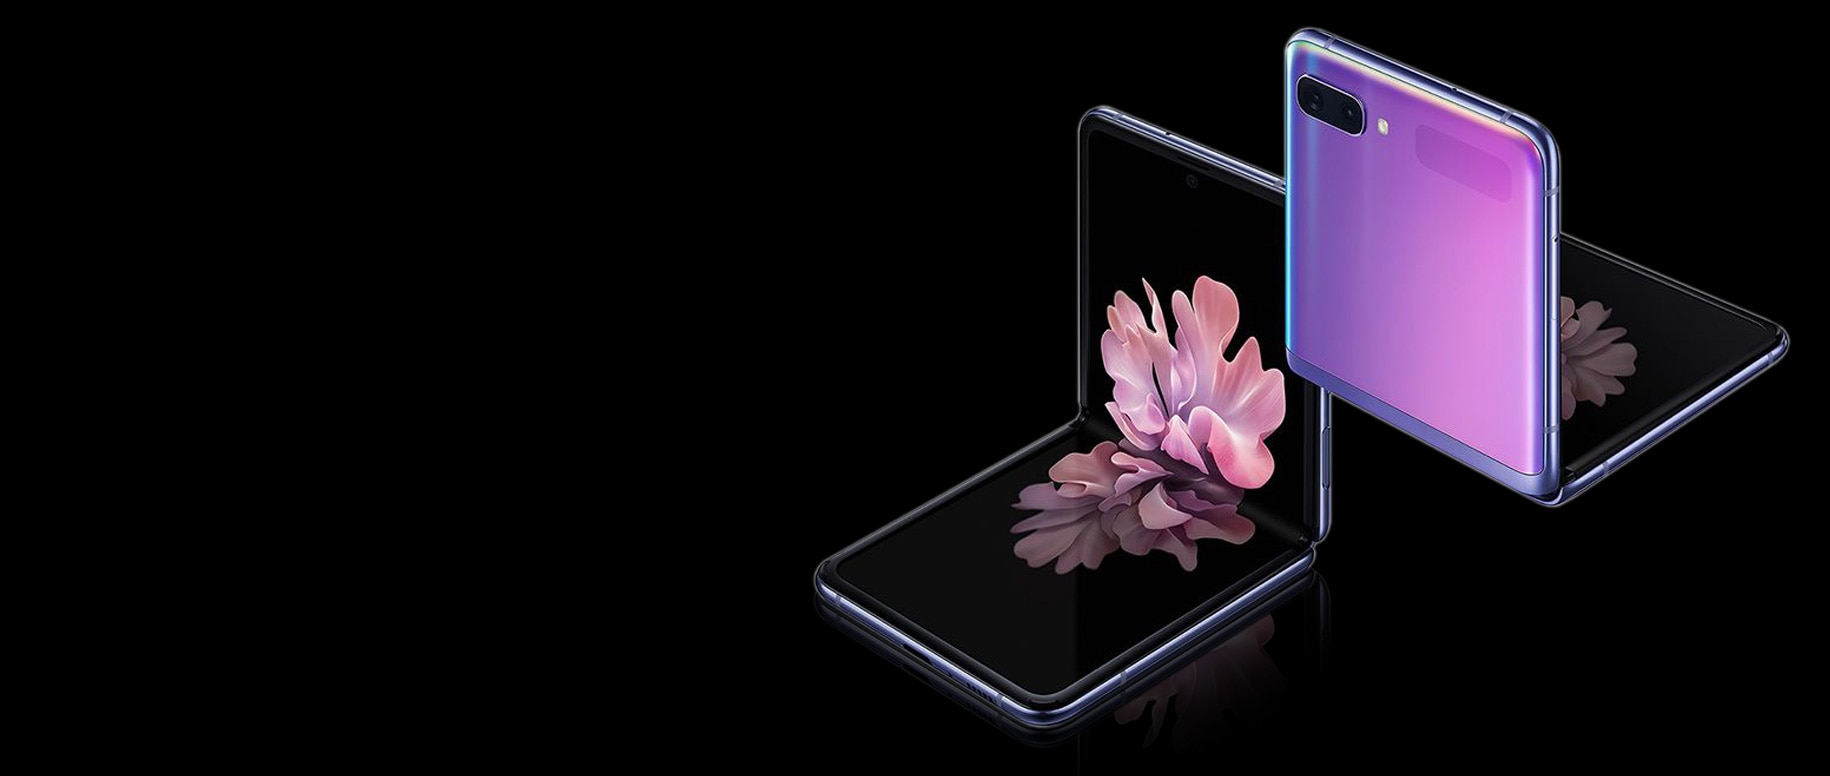 Divi Galaxy Z Flip tālruņi Mirror Purple trīs ceturtdaļu leņķī, viens redzams no priekšpuses un otrs no aizmugures. Abi ir salocīti taisnā leņķī ar freestop locīšanu. No priekšpuses redzamā uz ekrāna ir ziedoši ziedu fona attēli